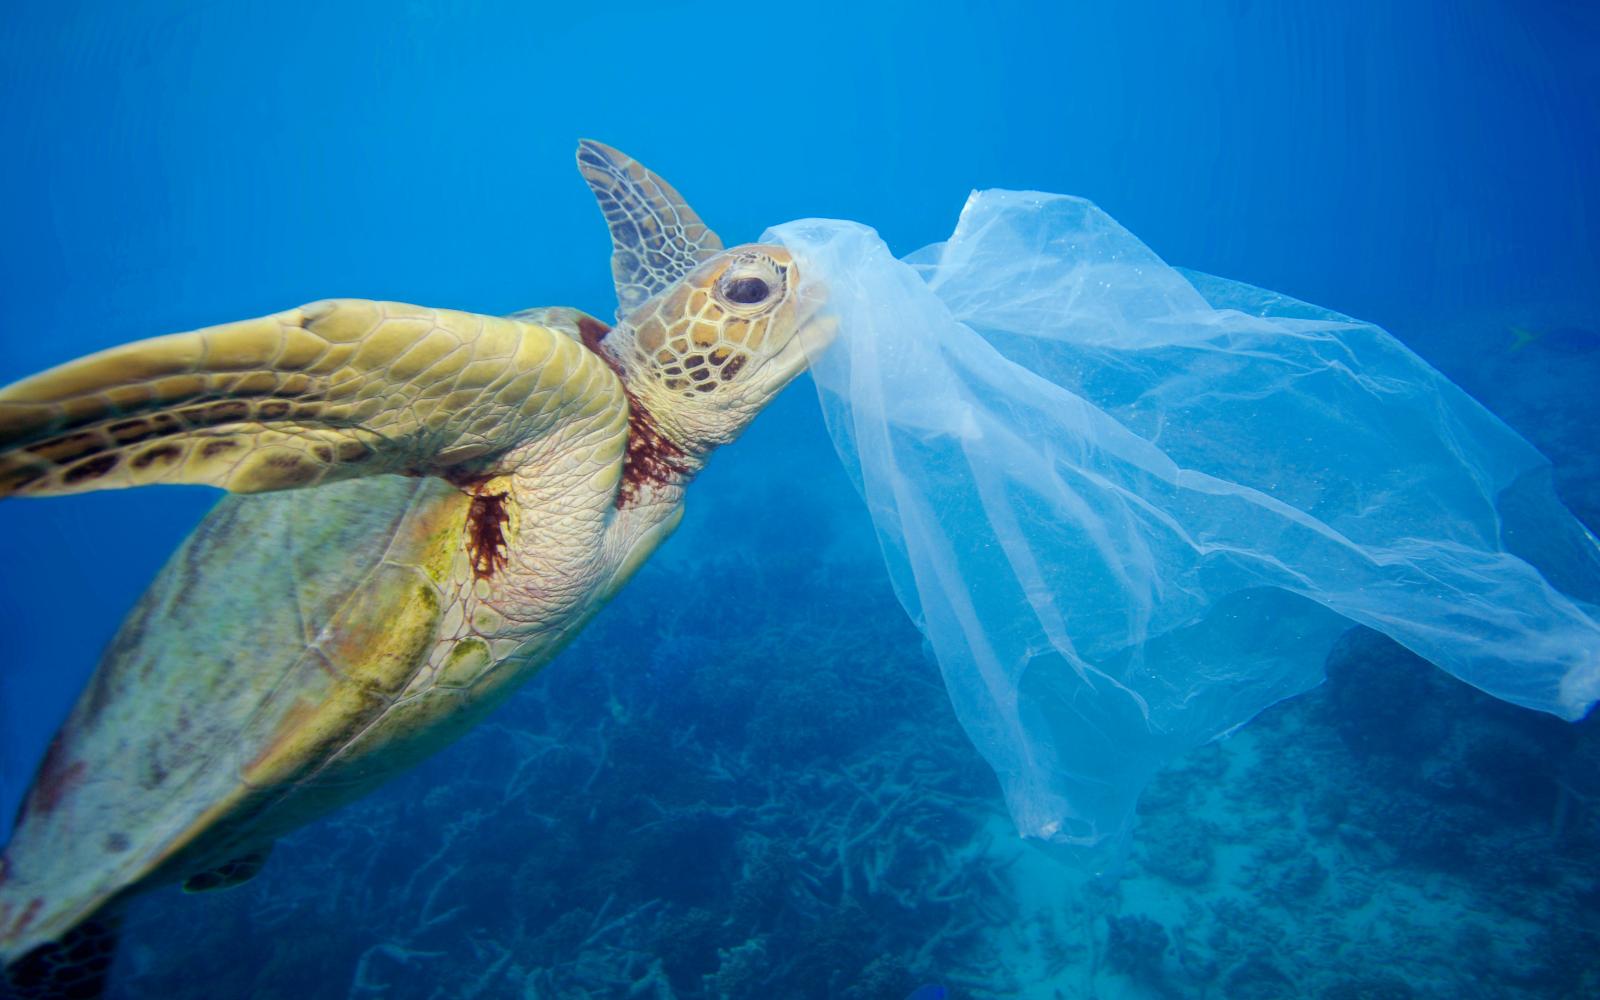 Comment réduire les problèmes de pollution plastique marine